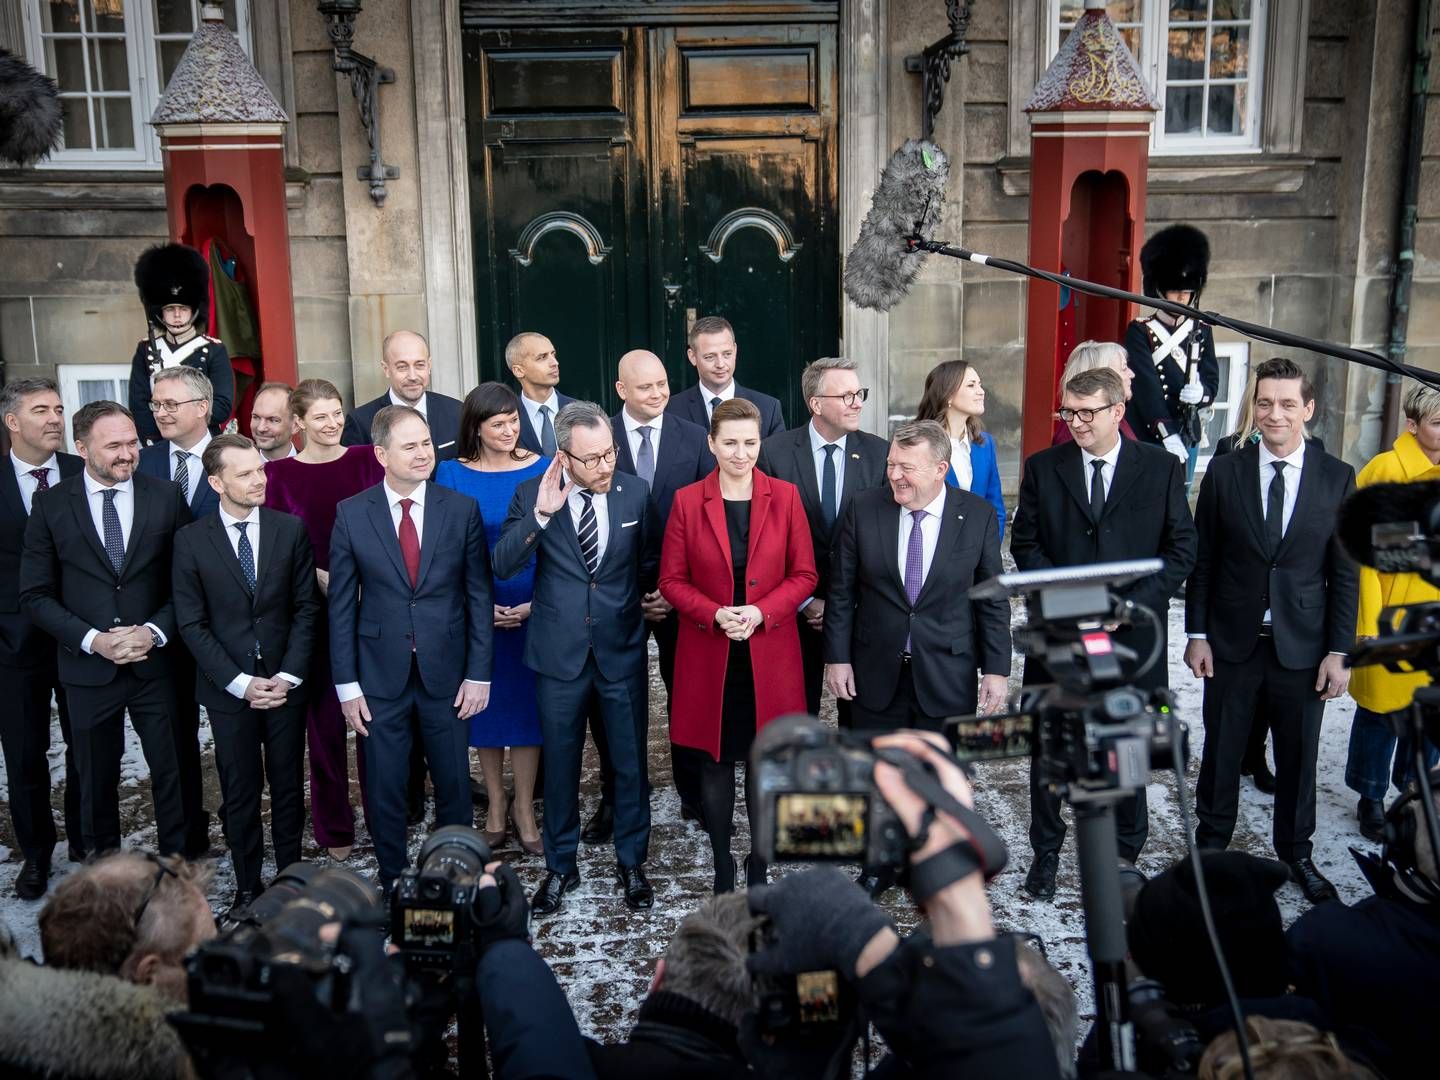 Den nye SVM-regerings ministre blev torsdag præsenteret uden for Amalienborg. | Foto: Mads Claus Rasmussen/Ritzau Scanpix